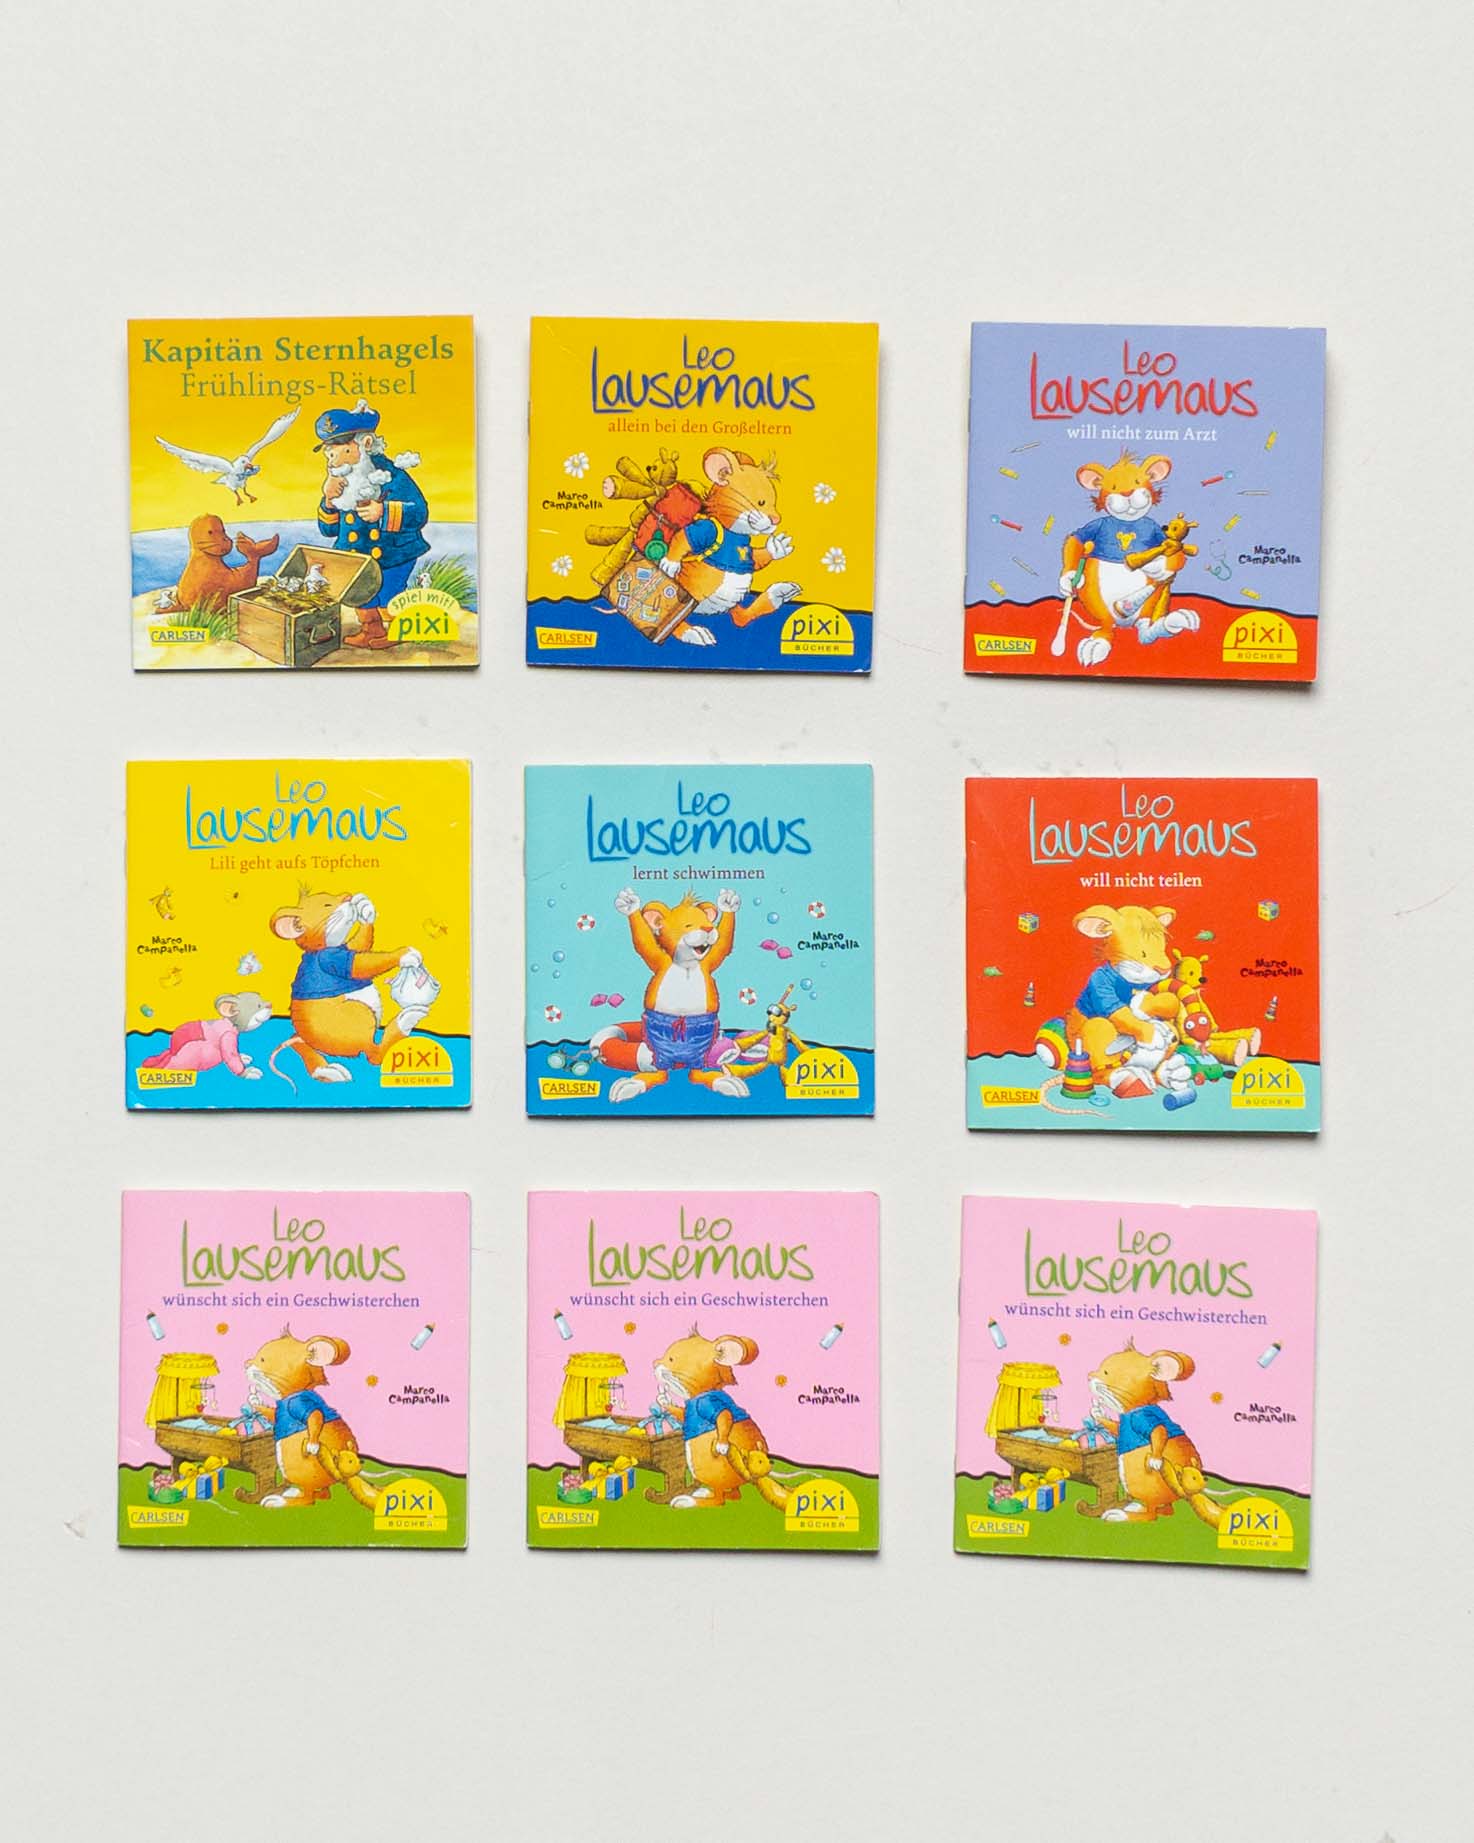 9 Pixi Bücher – Leo Lausemaus Minibücher Set